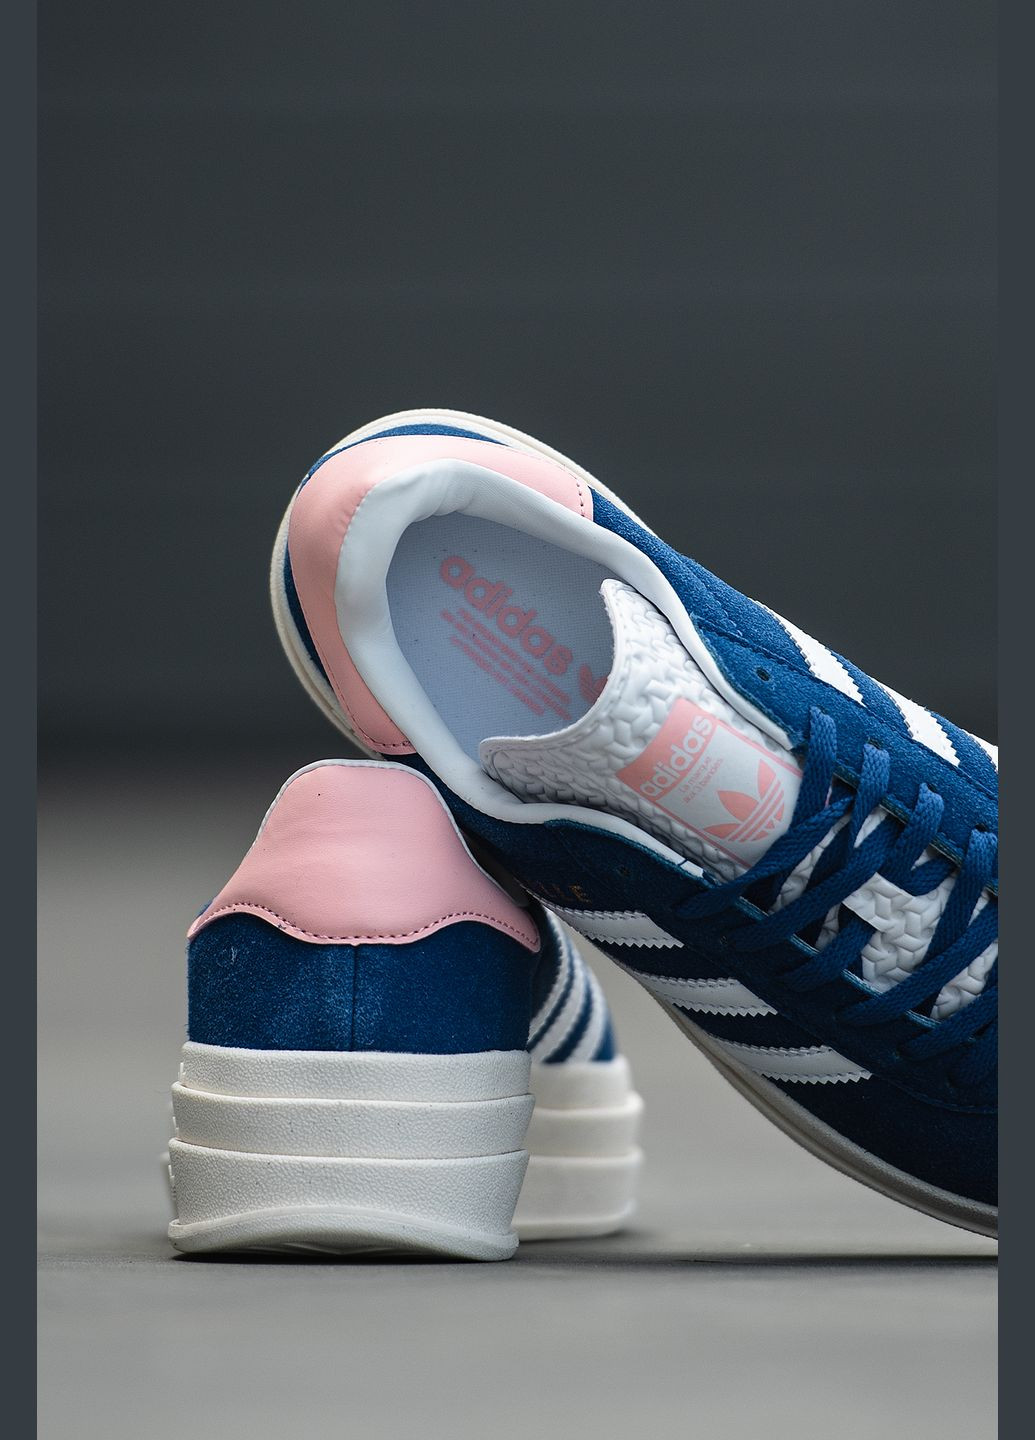 Синие демисезонные кроссовки женские adidas Gazelle Bold